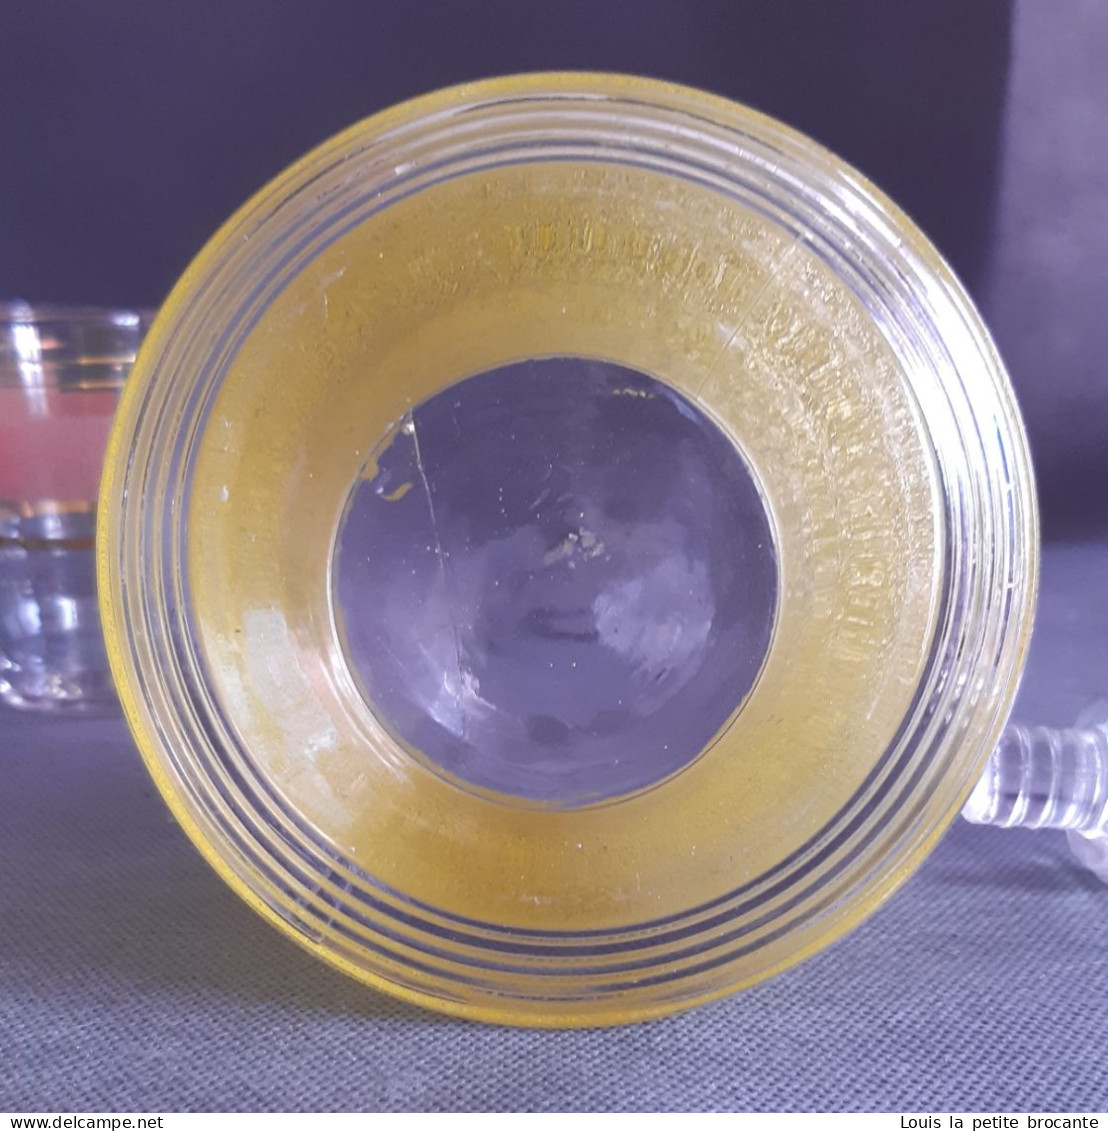 Service à liqueur vintage années 60/70, avec une carafe jaune et 6 verres en 3 fois 2 couleurs,  aspect  givré ou granit